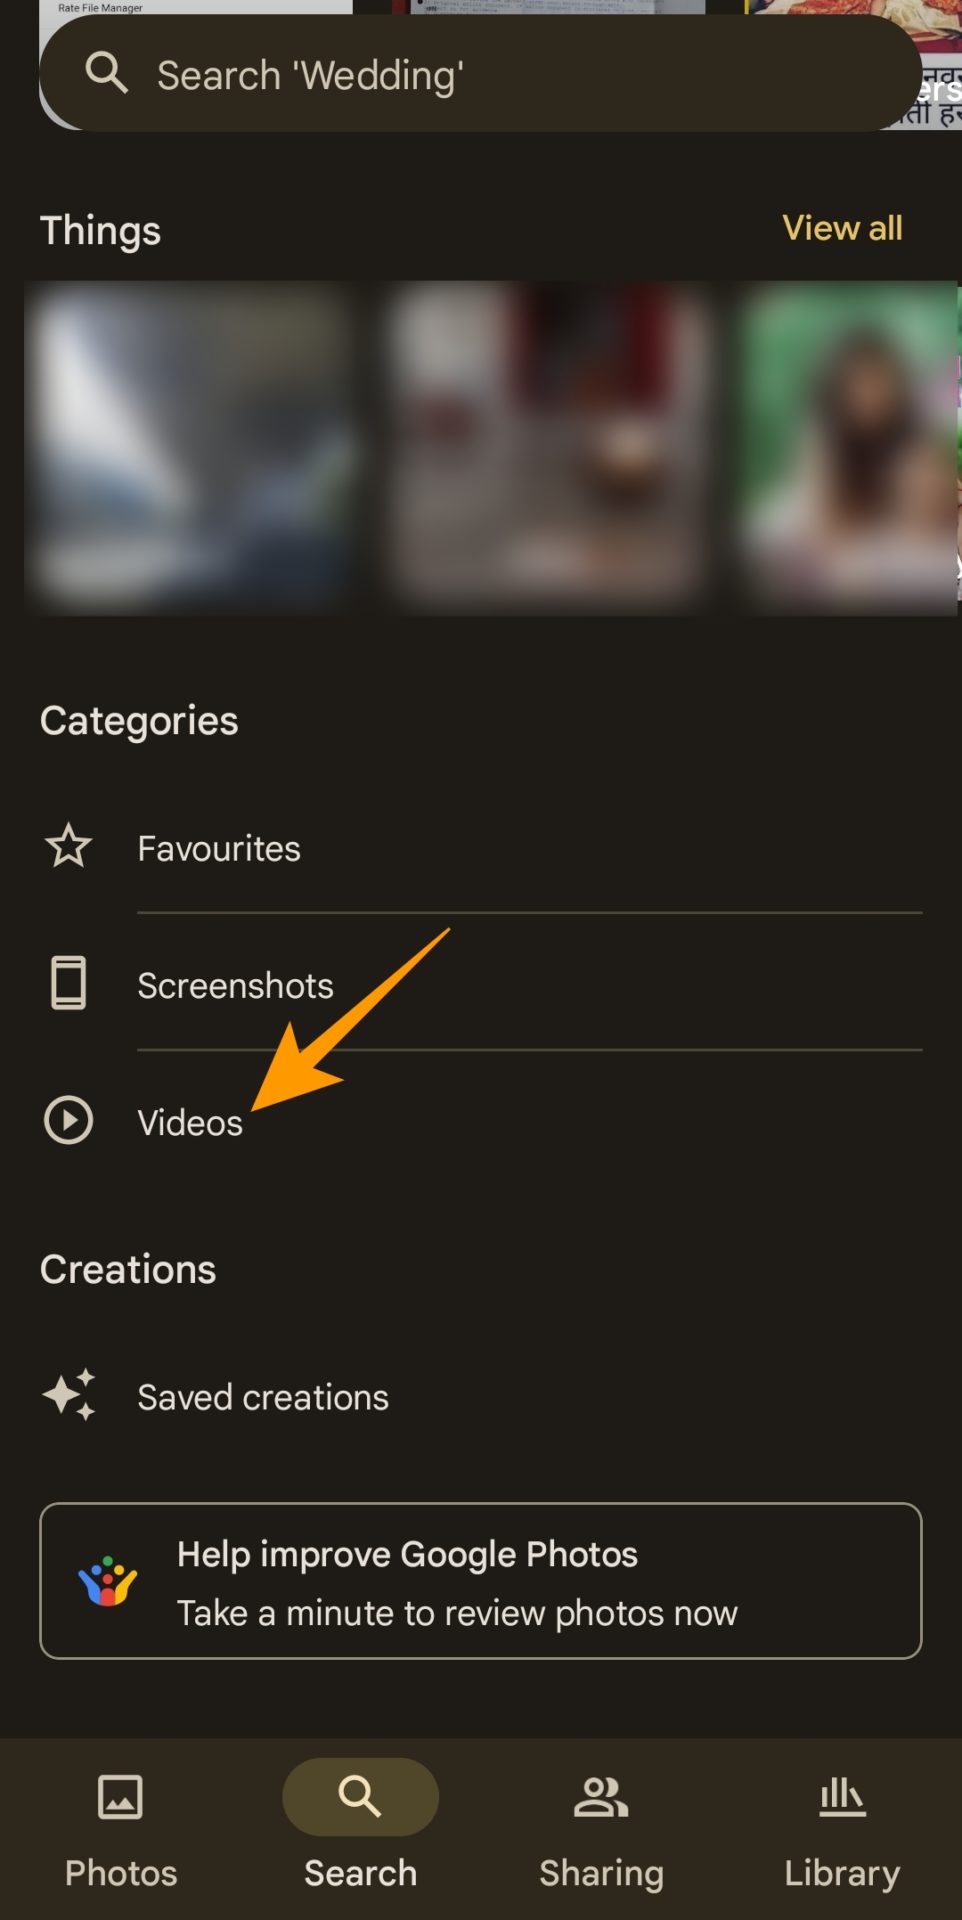 Videos under categories in Google Photos